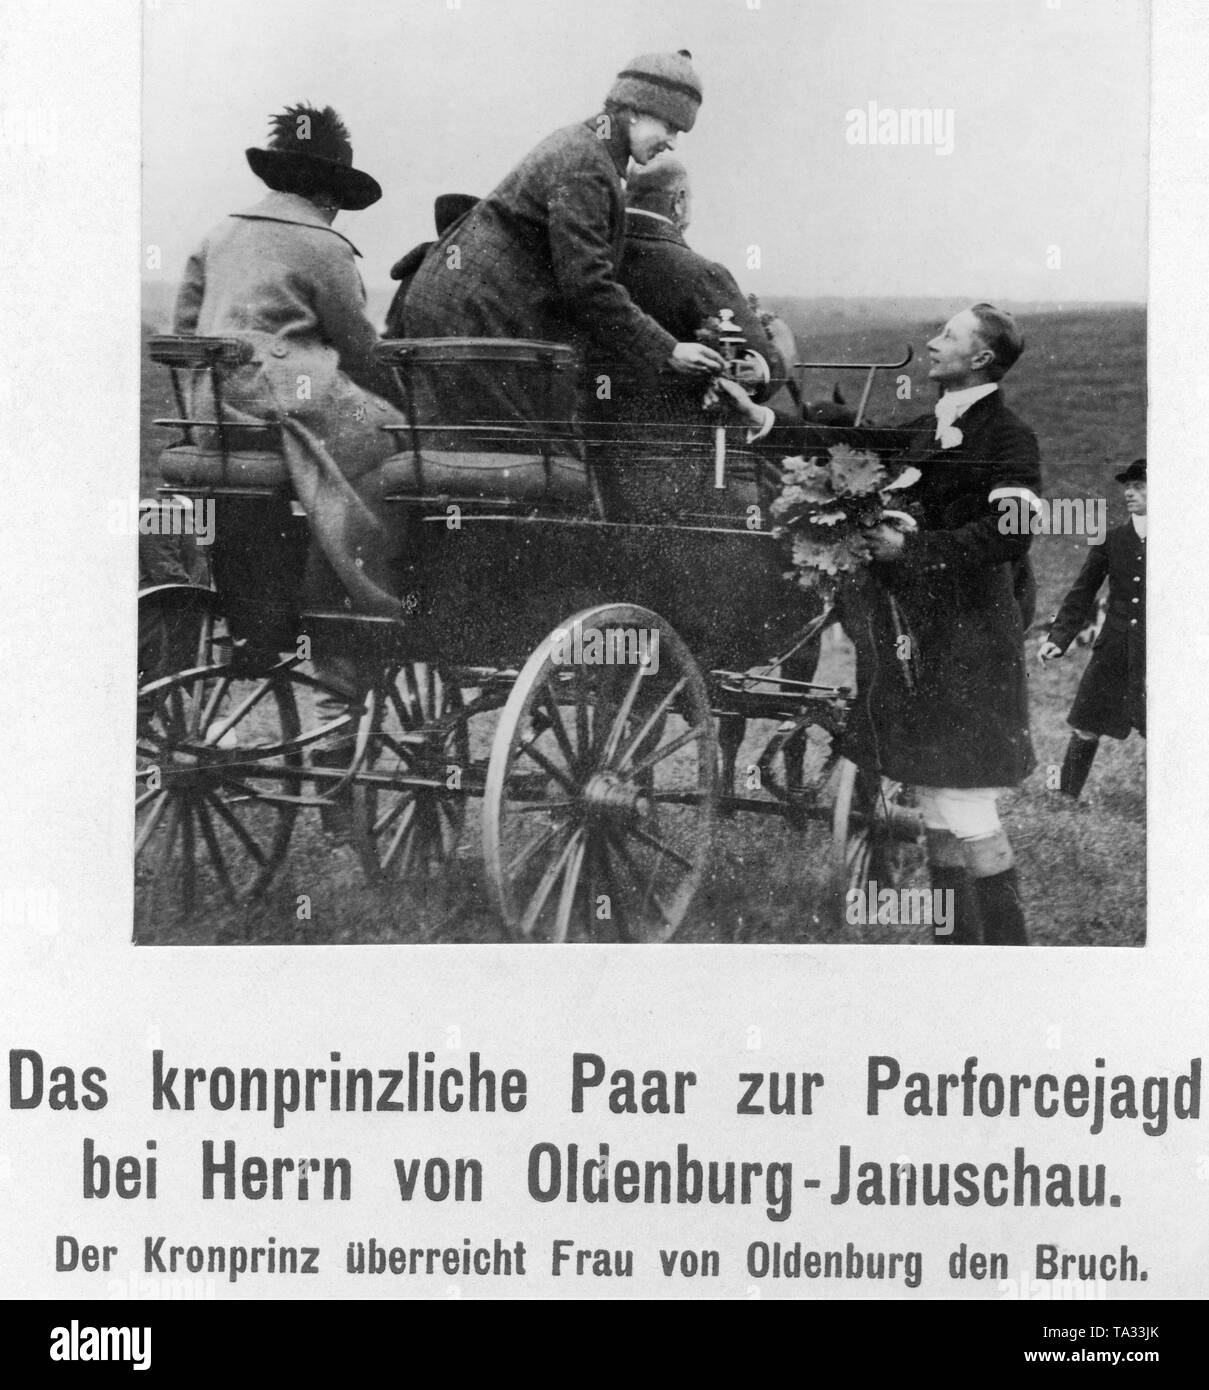 Il principe ereditario giovane come ospiti durante una forza par caccia al sig. Elard von Oldenburg-Januschau. Qui il principe ereditario (secondo da destra) con Agnes von Oldenburg-Januschau, nasce la contessa von Kanitz. Foto Stock